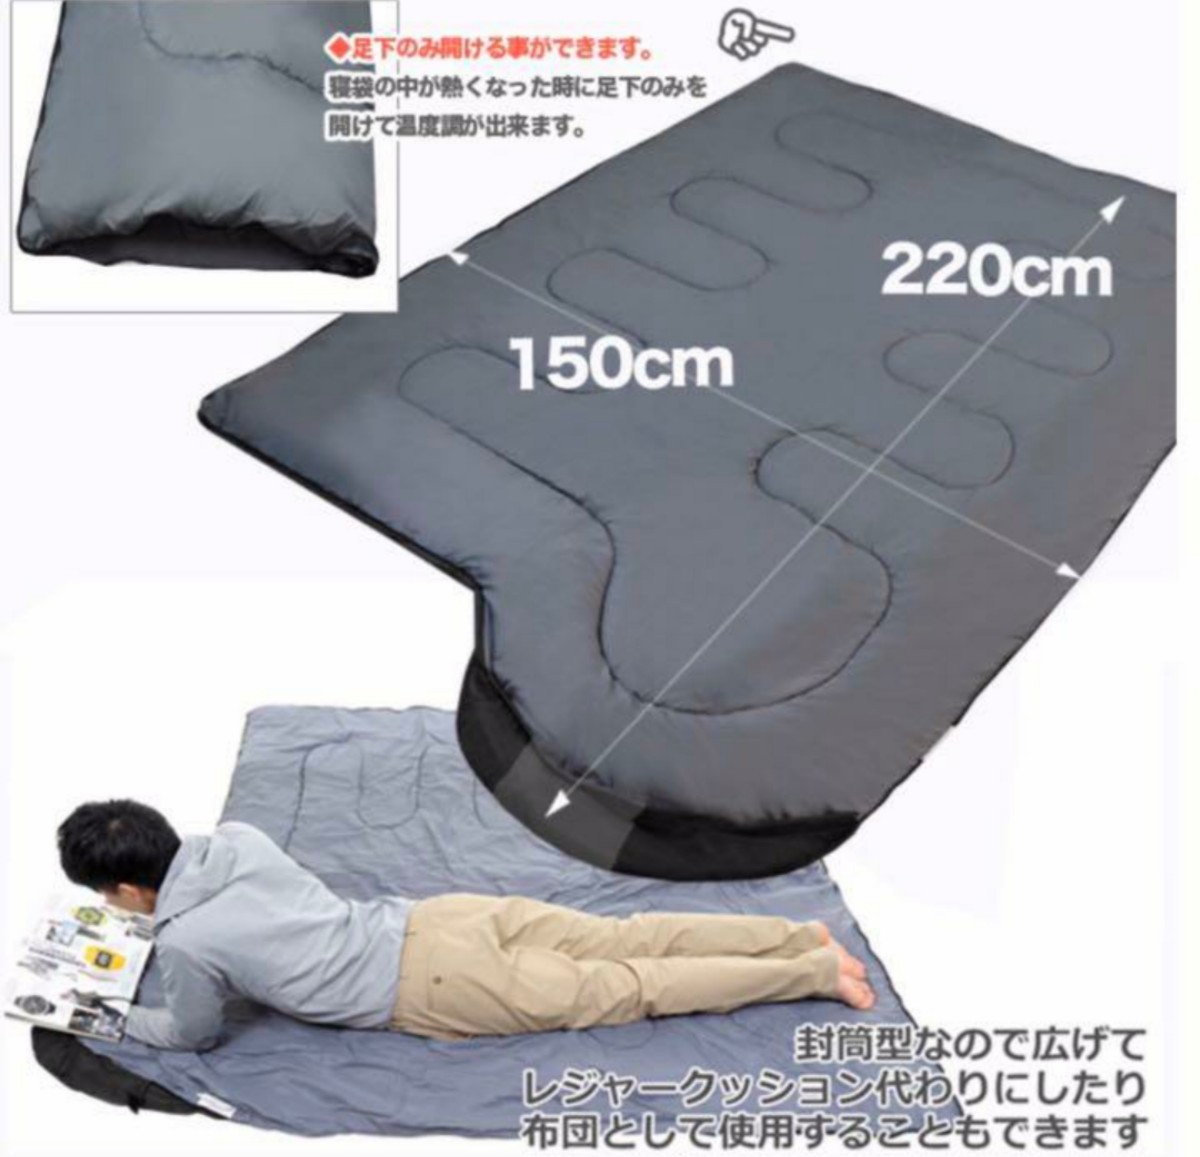 【特価特価】寝袋 最低使用温度 -15度 1650g カモフラージュ 2点 